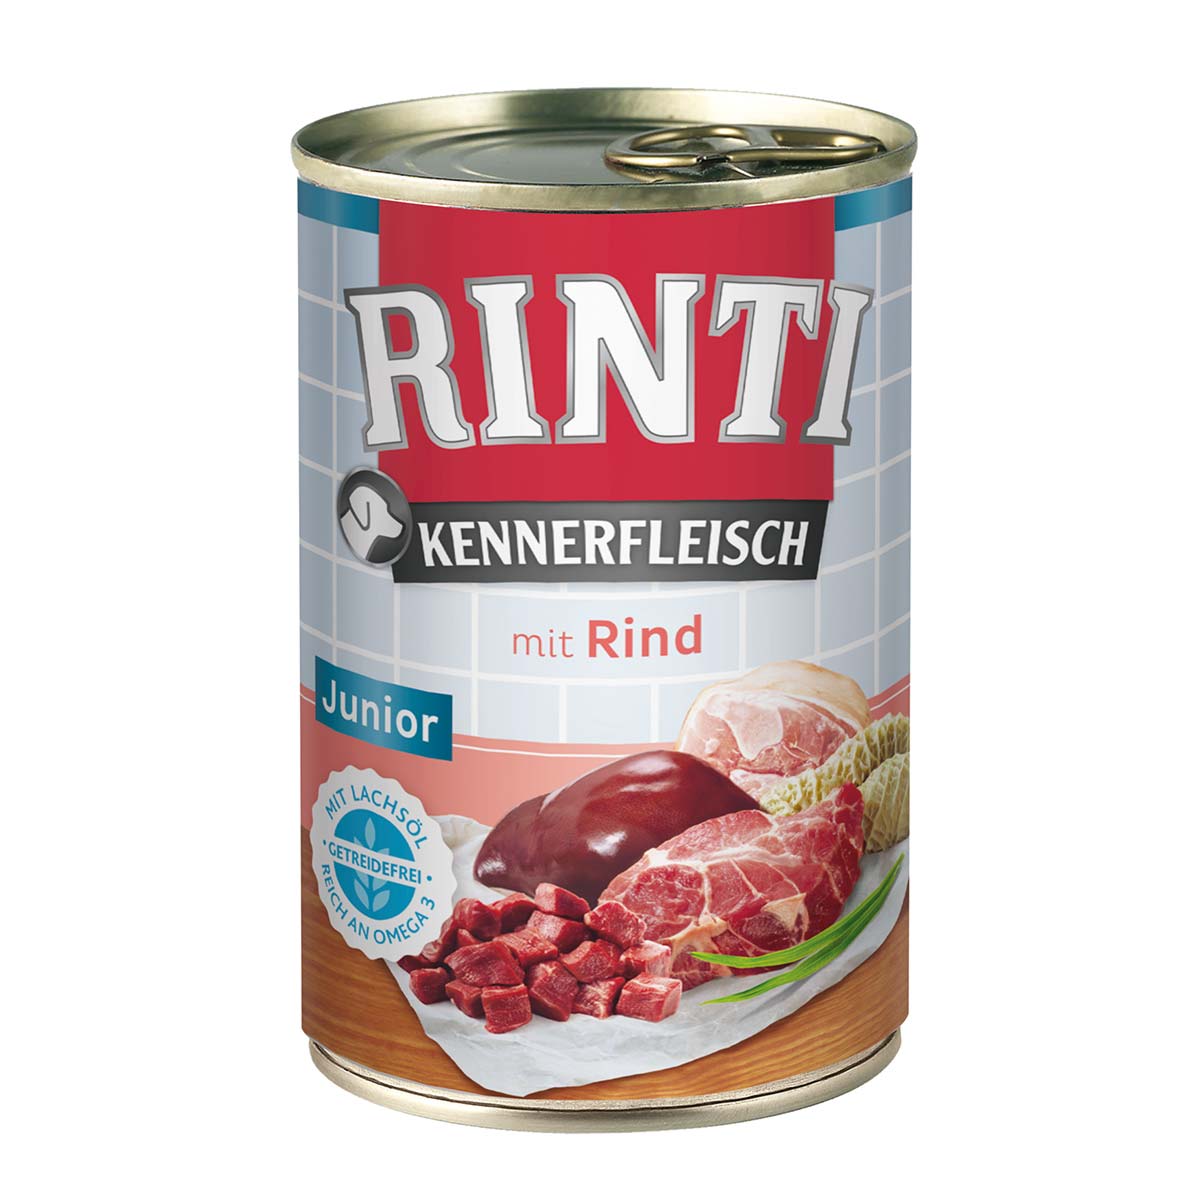 Rinti Kennerfleisch Junior mit Rind 12x400g